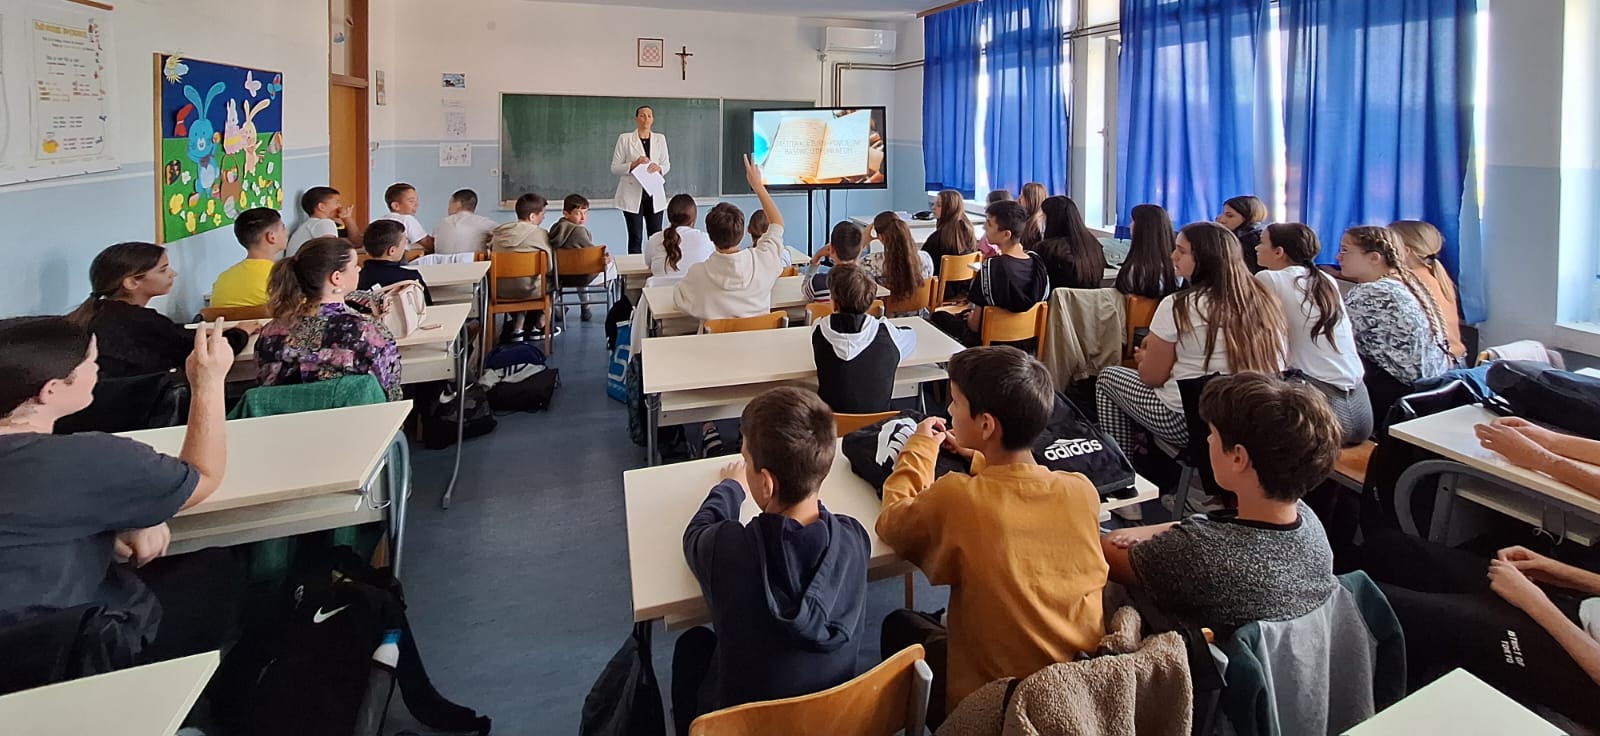 FOTO | U Osnovnoj školi Kardinala Stepinca održano predavanje o neumskoj kulturno-povijesnoj baštini